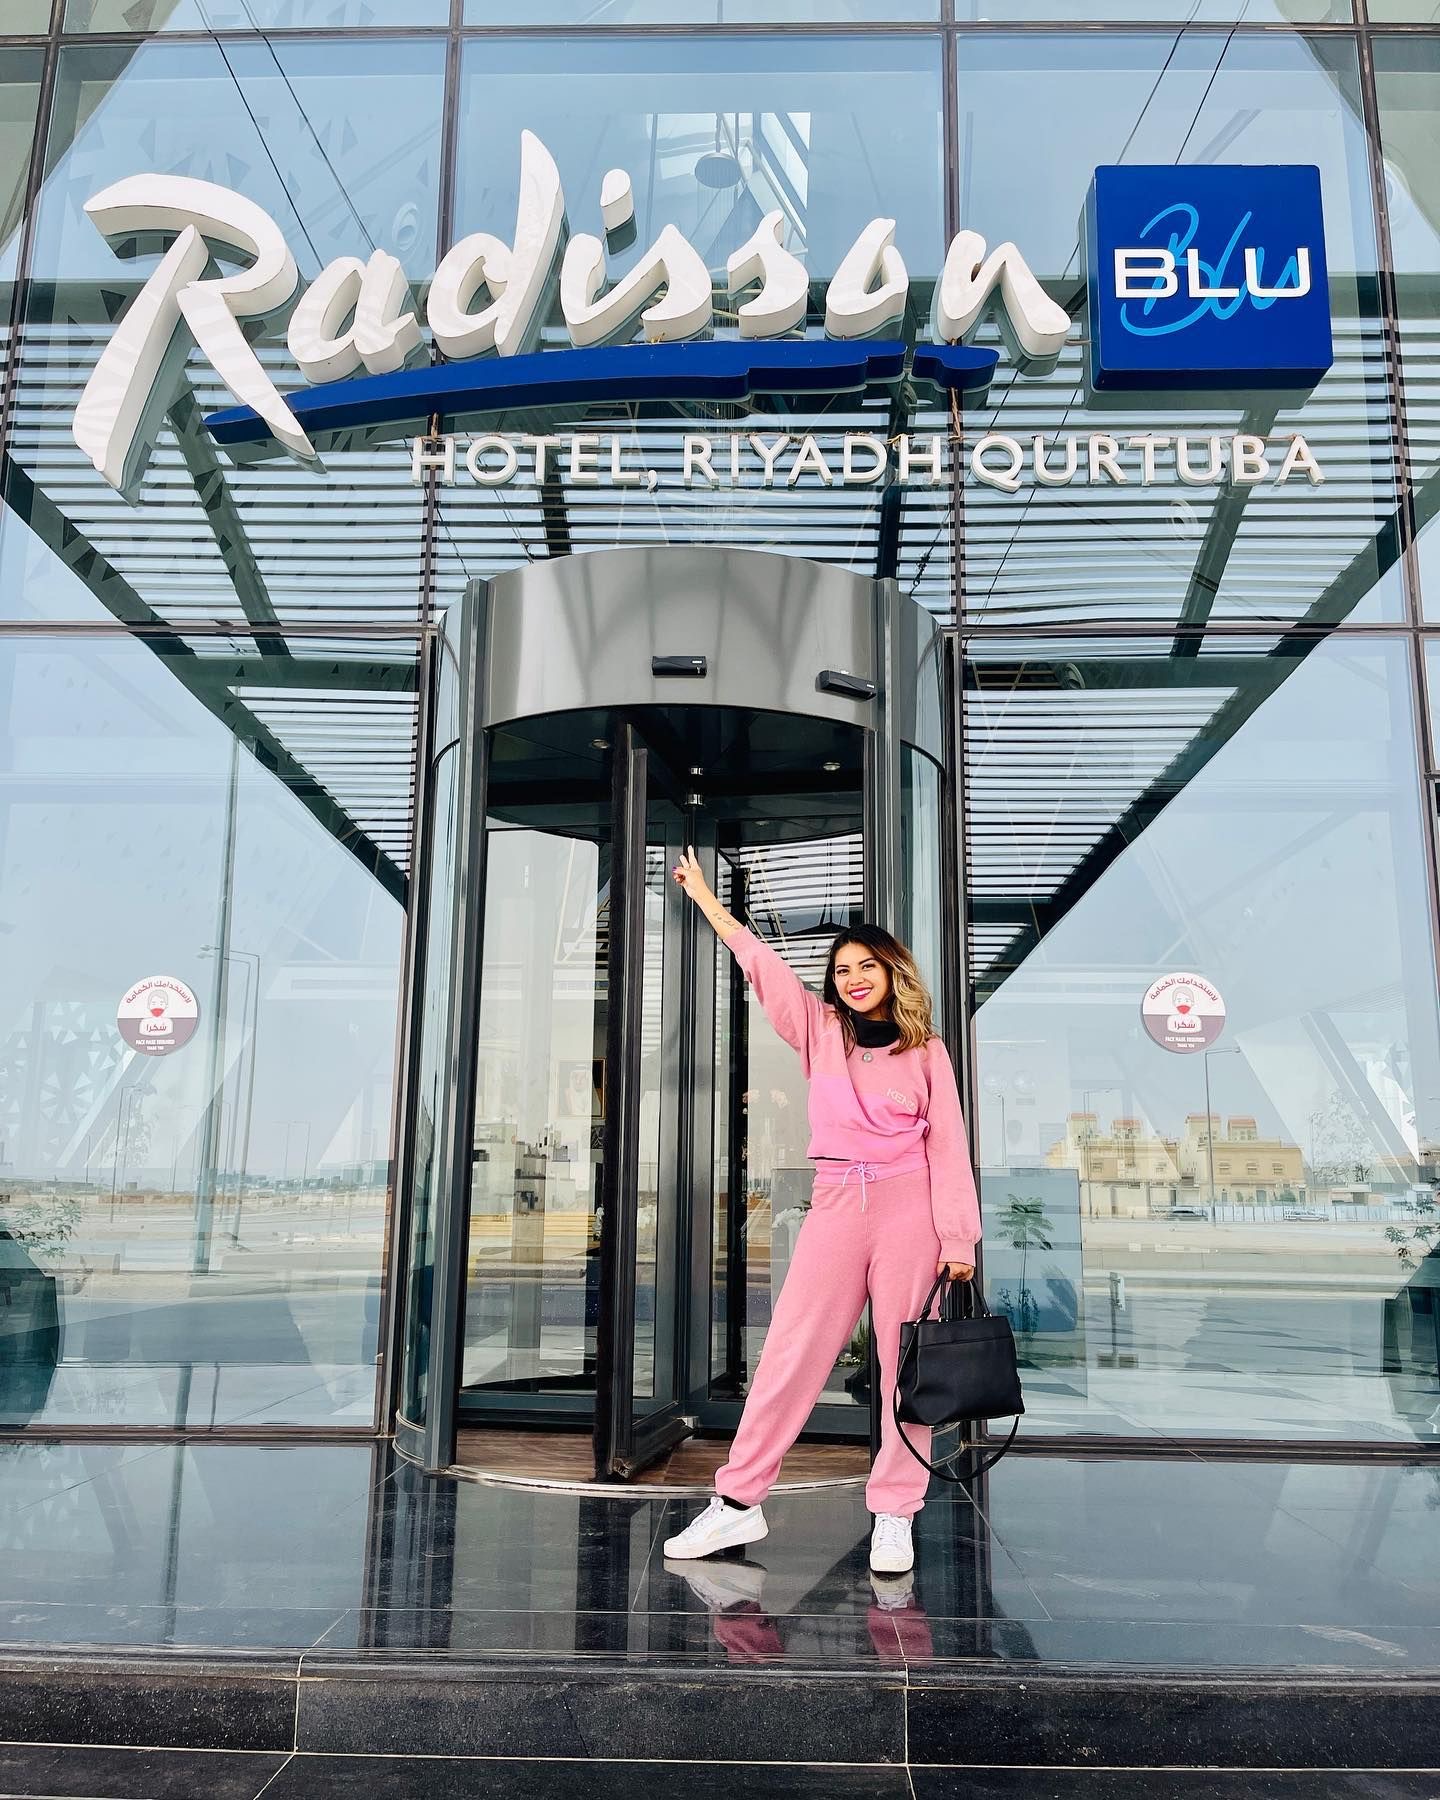 Radisson Blu Hotel, Riyadh Qurtuba We are visiting my 171st country!